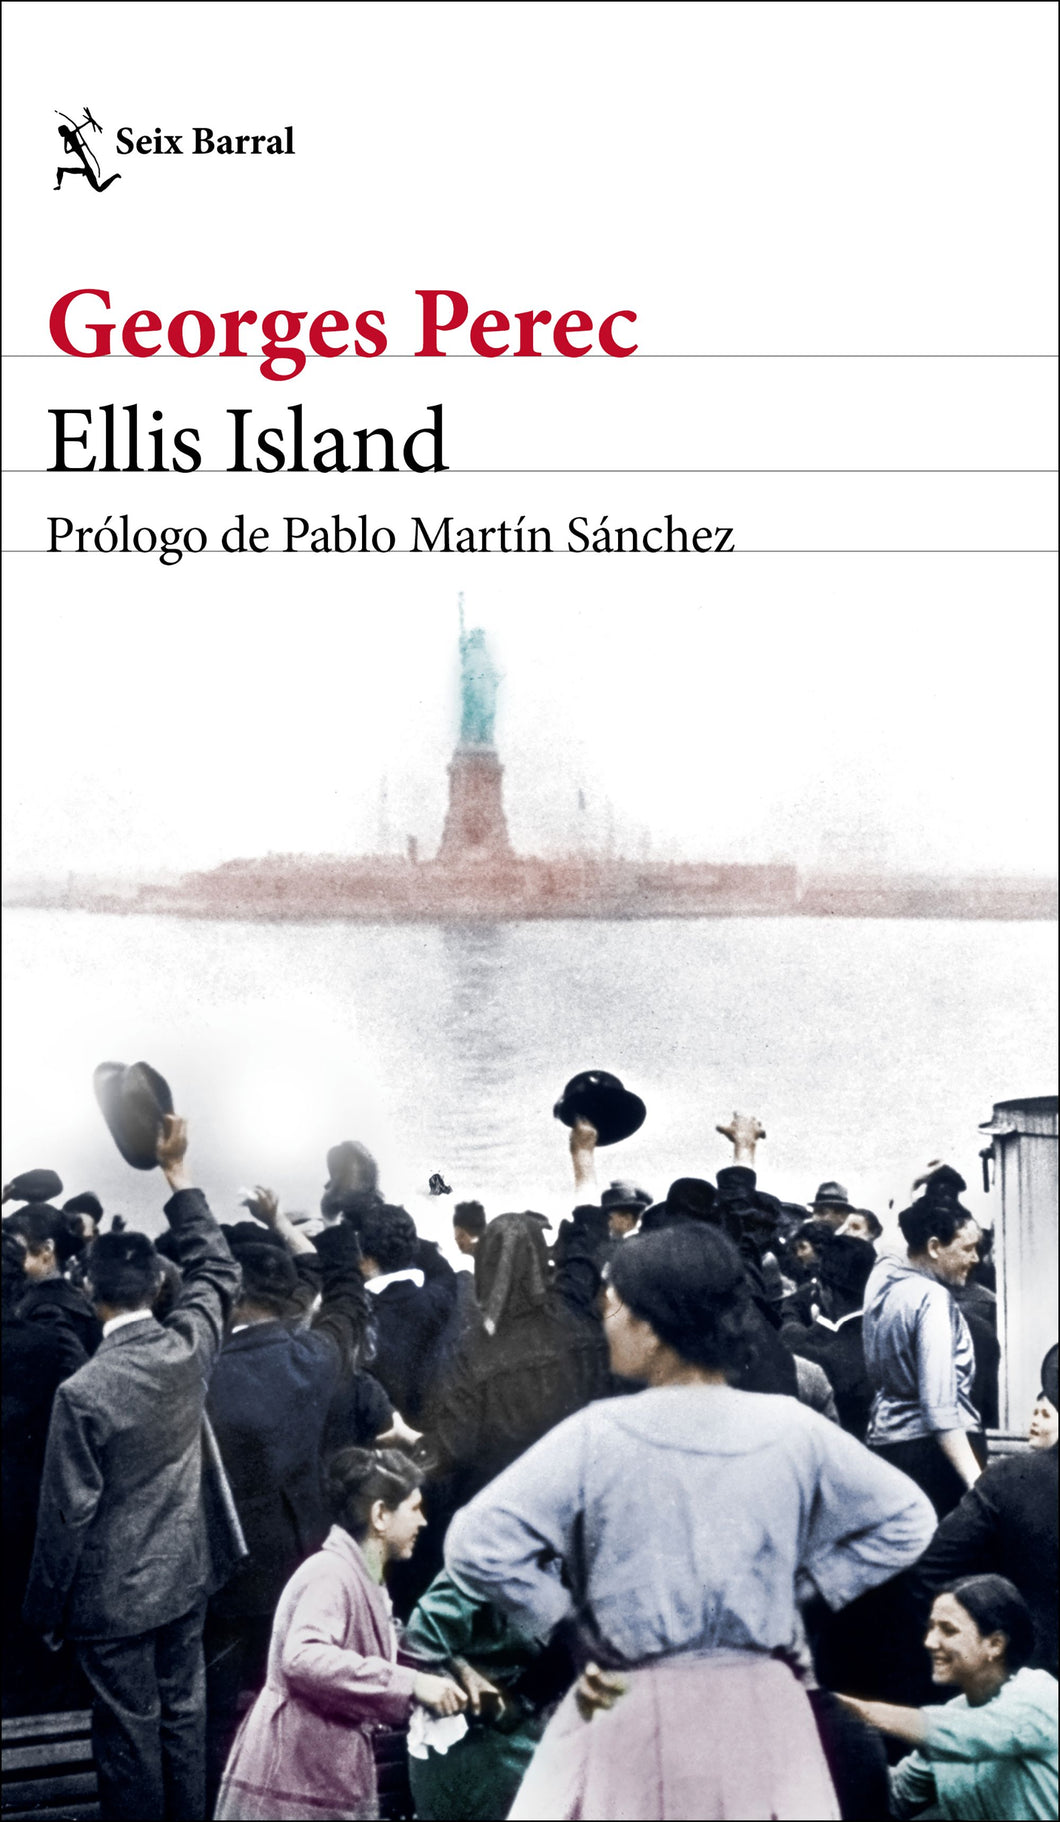 ELLIS ISLAND - Georges Perec